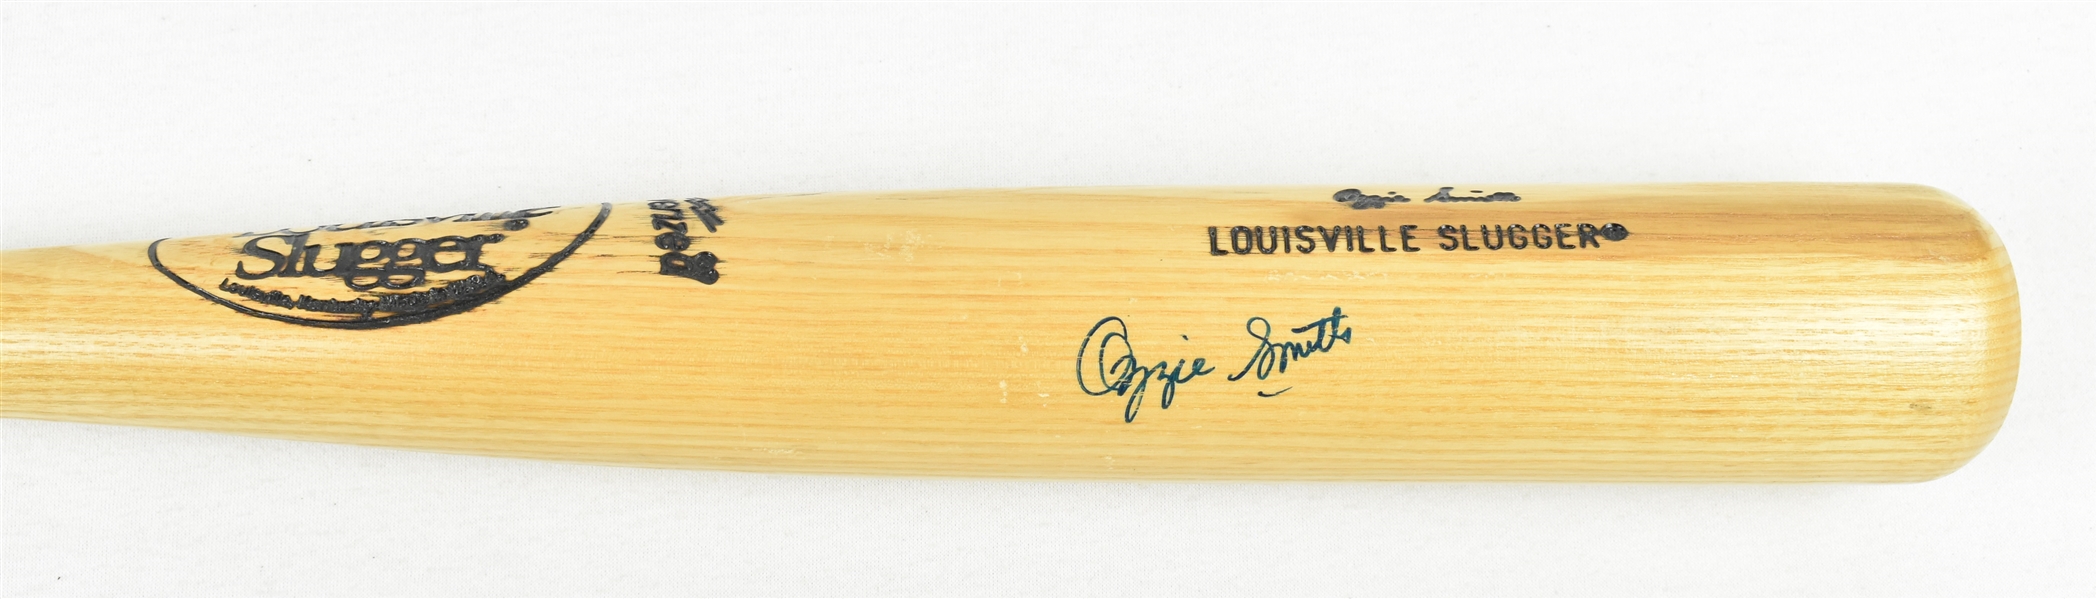 Ozzie Smith Autographed Signature Model Bat